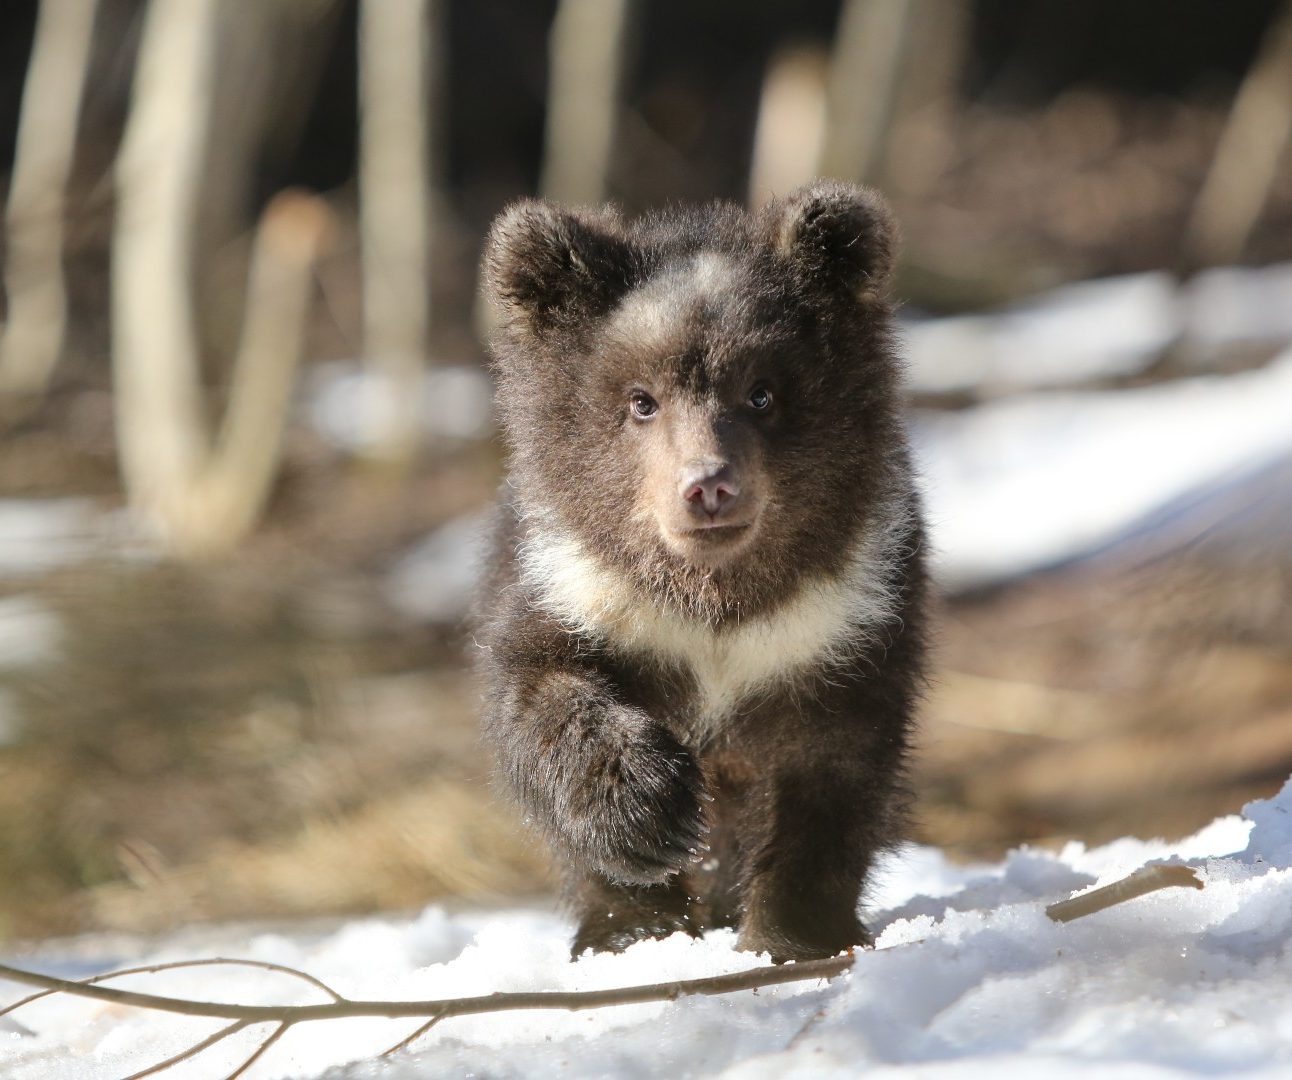 A brown bear cub running through the snow